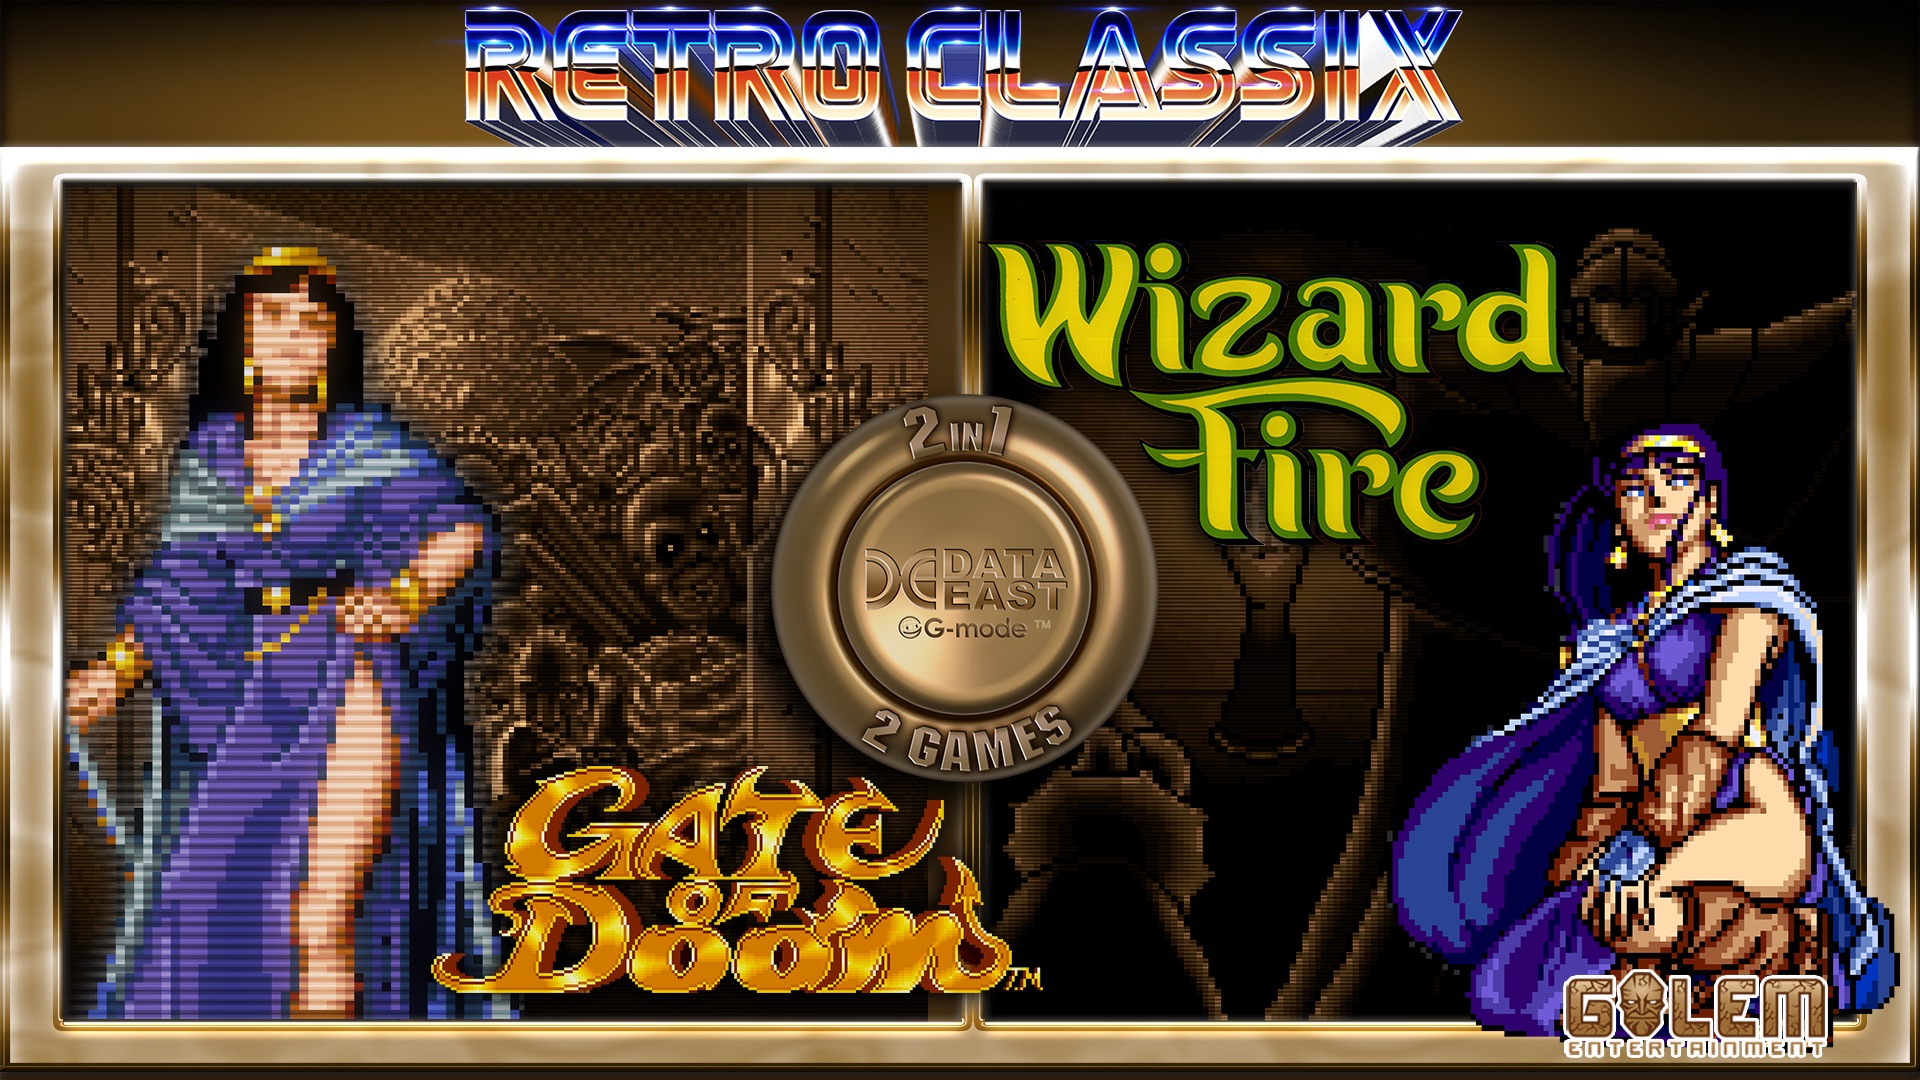 Retro Classix 2-in-1 Pack: Gate of Doom & Wizard Fire